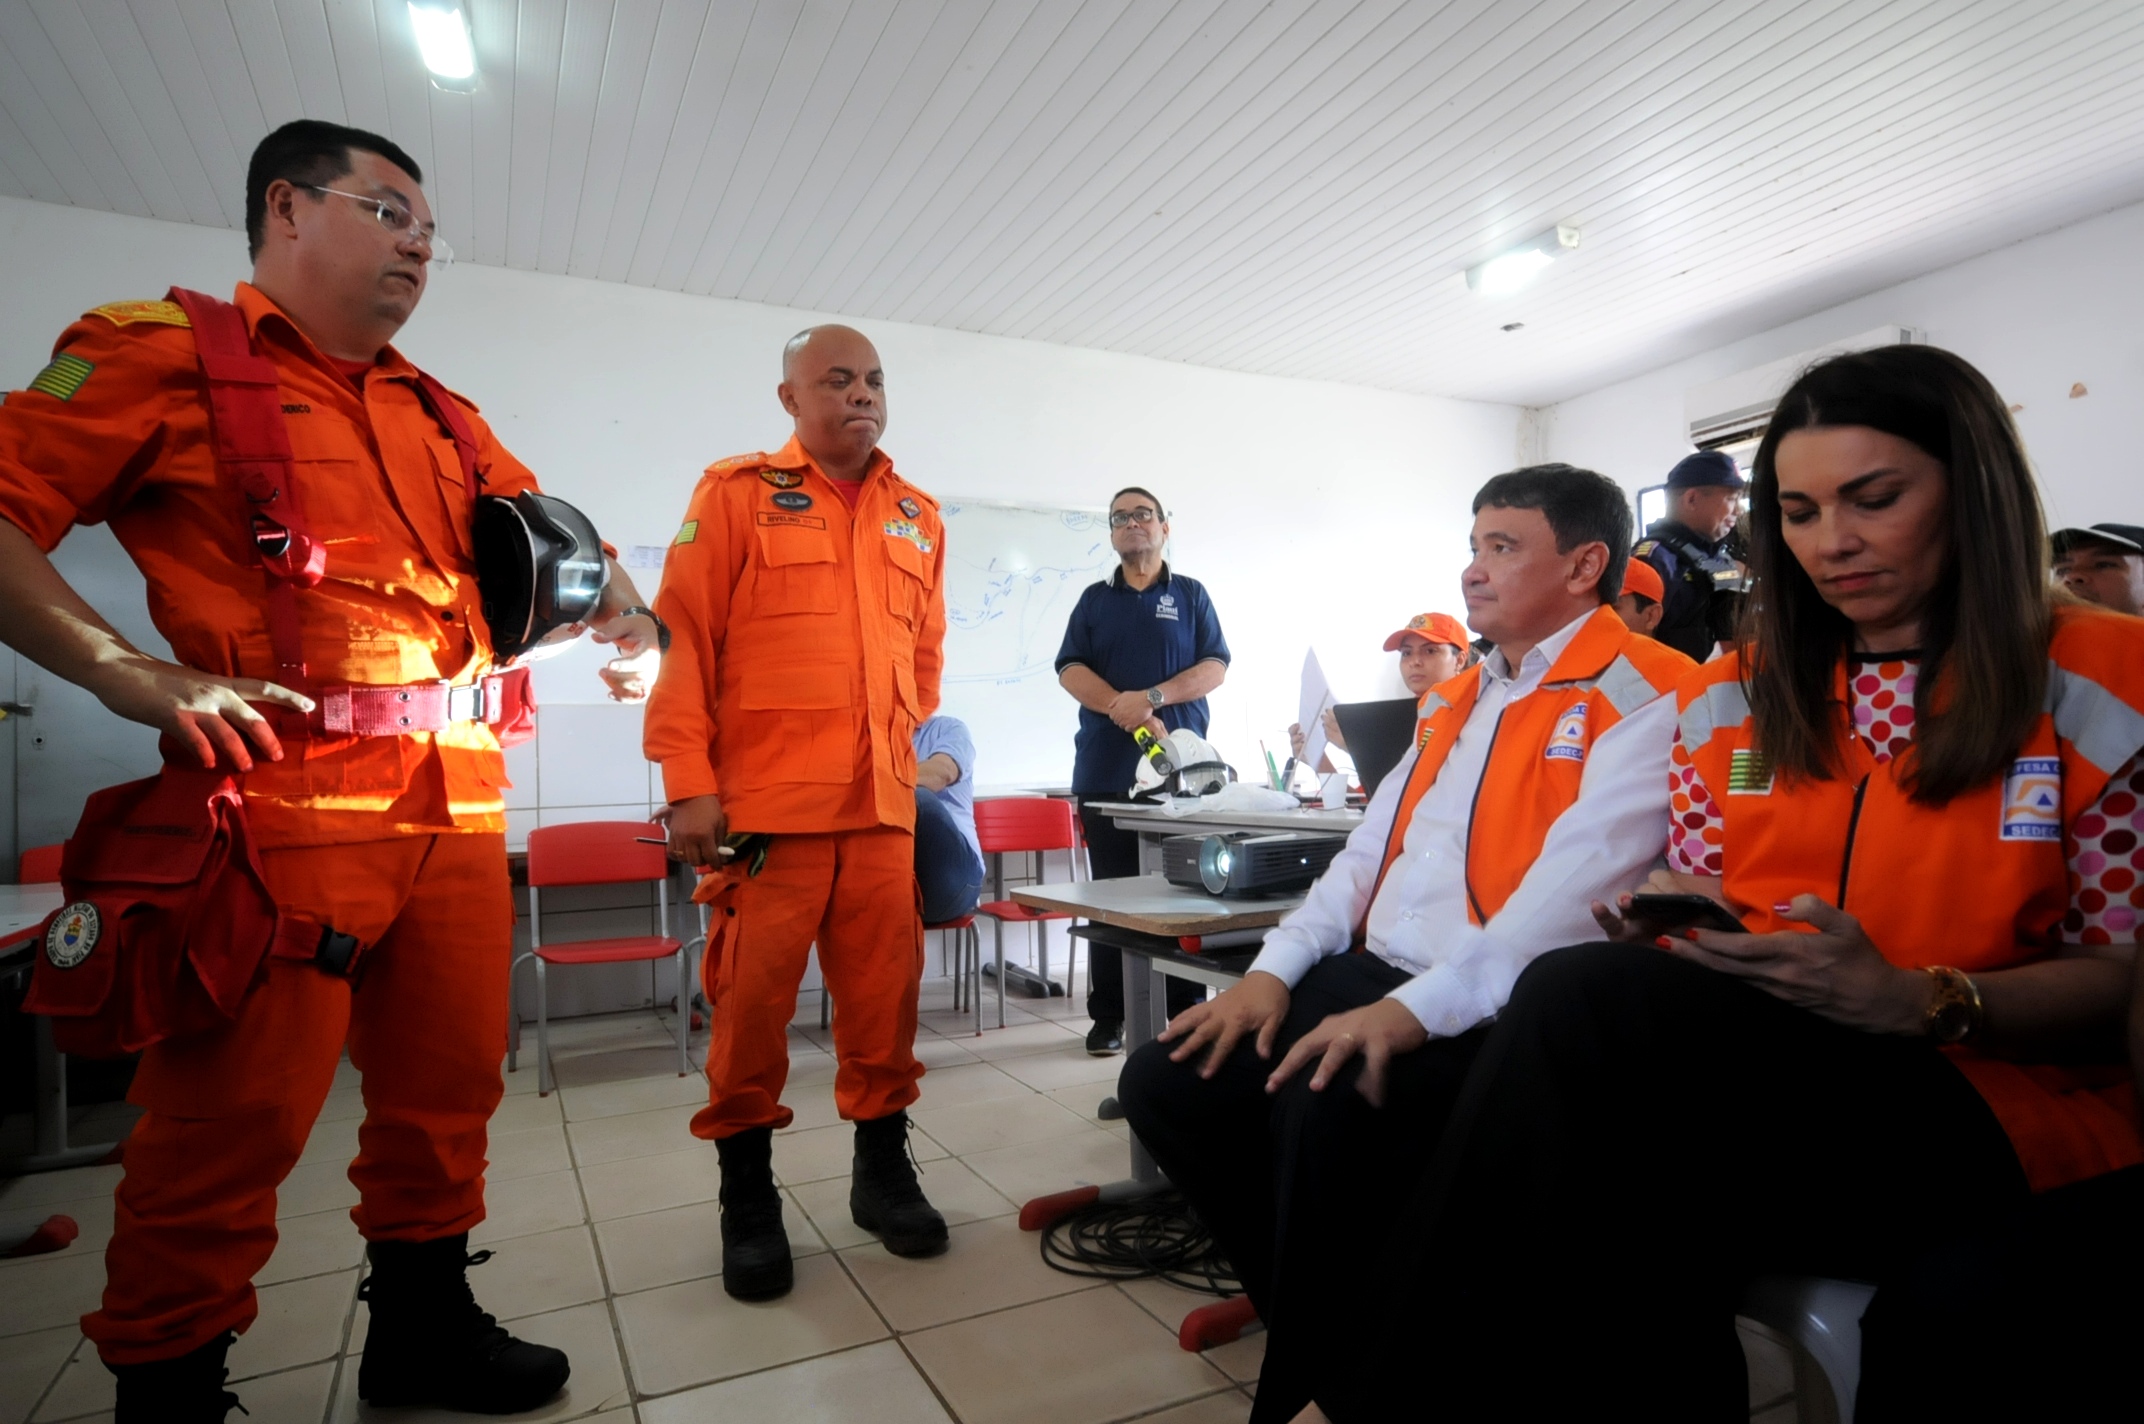 O resgate, monitoramento e retirada de famílias das áreas de risco em José de Freitas foi escolhido.